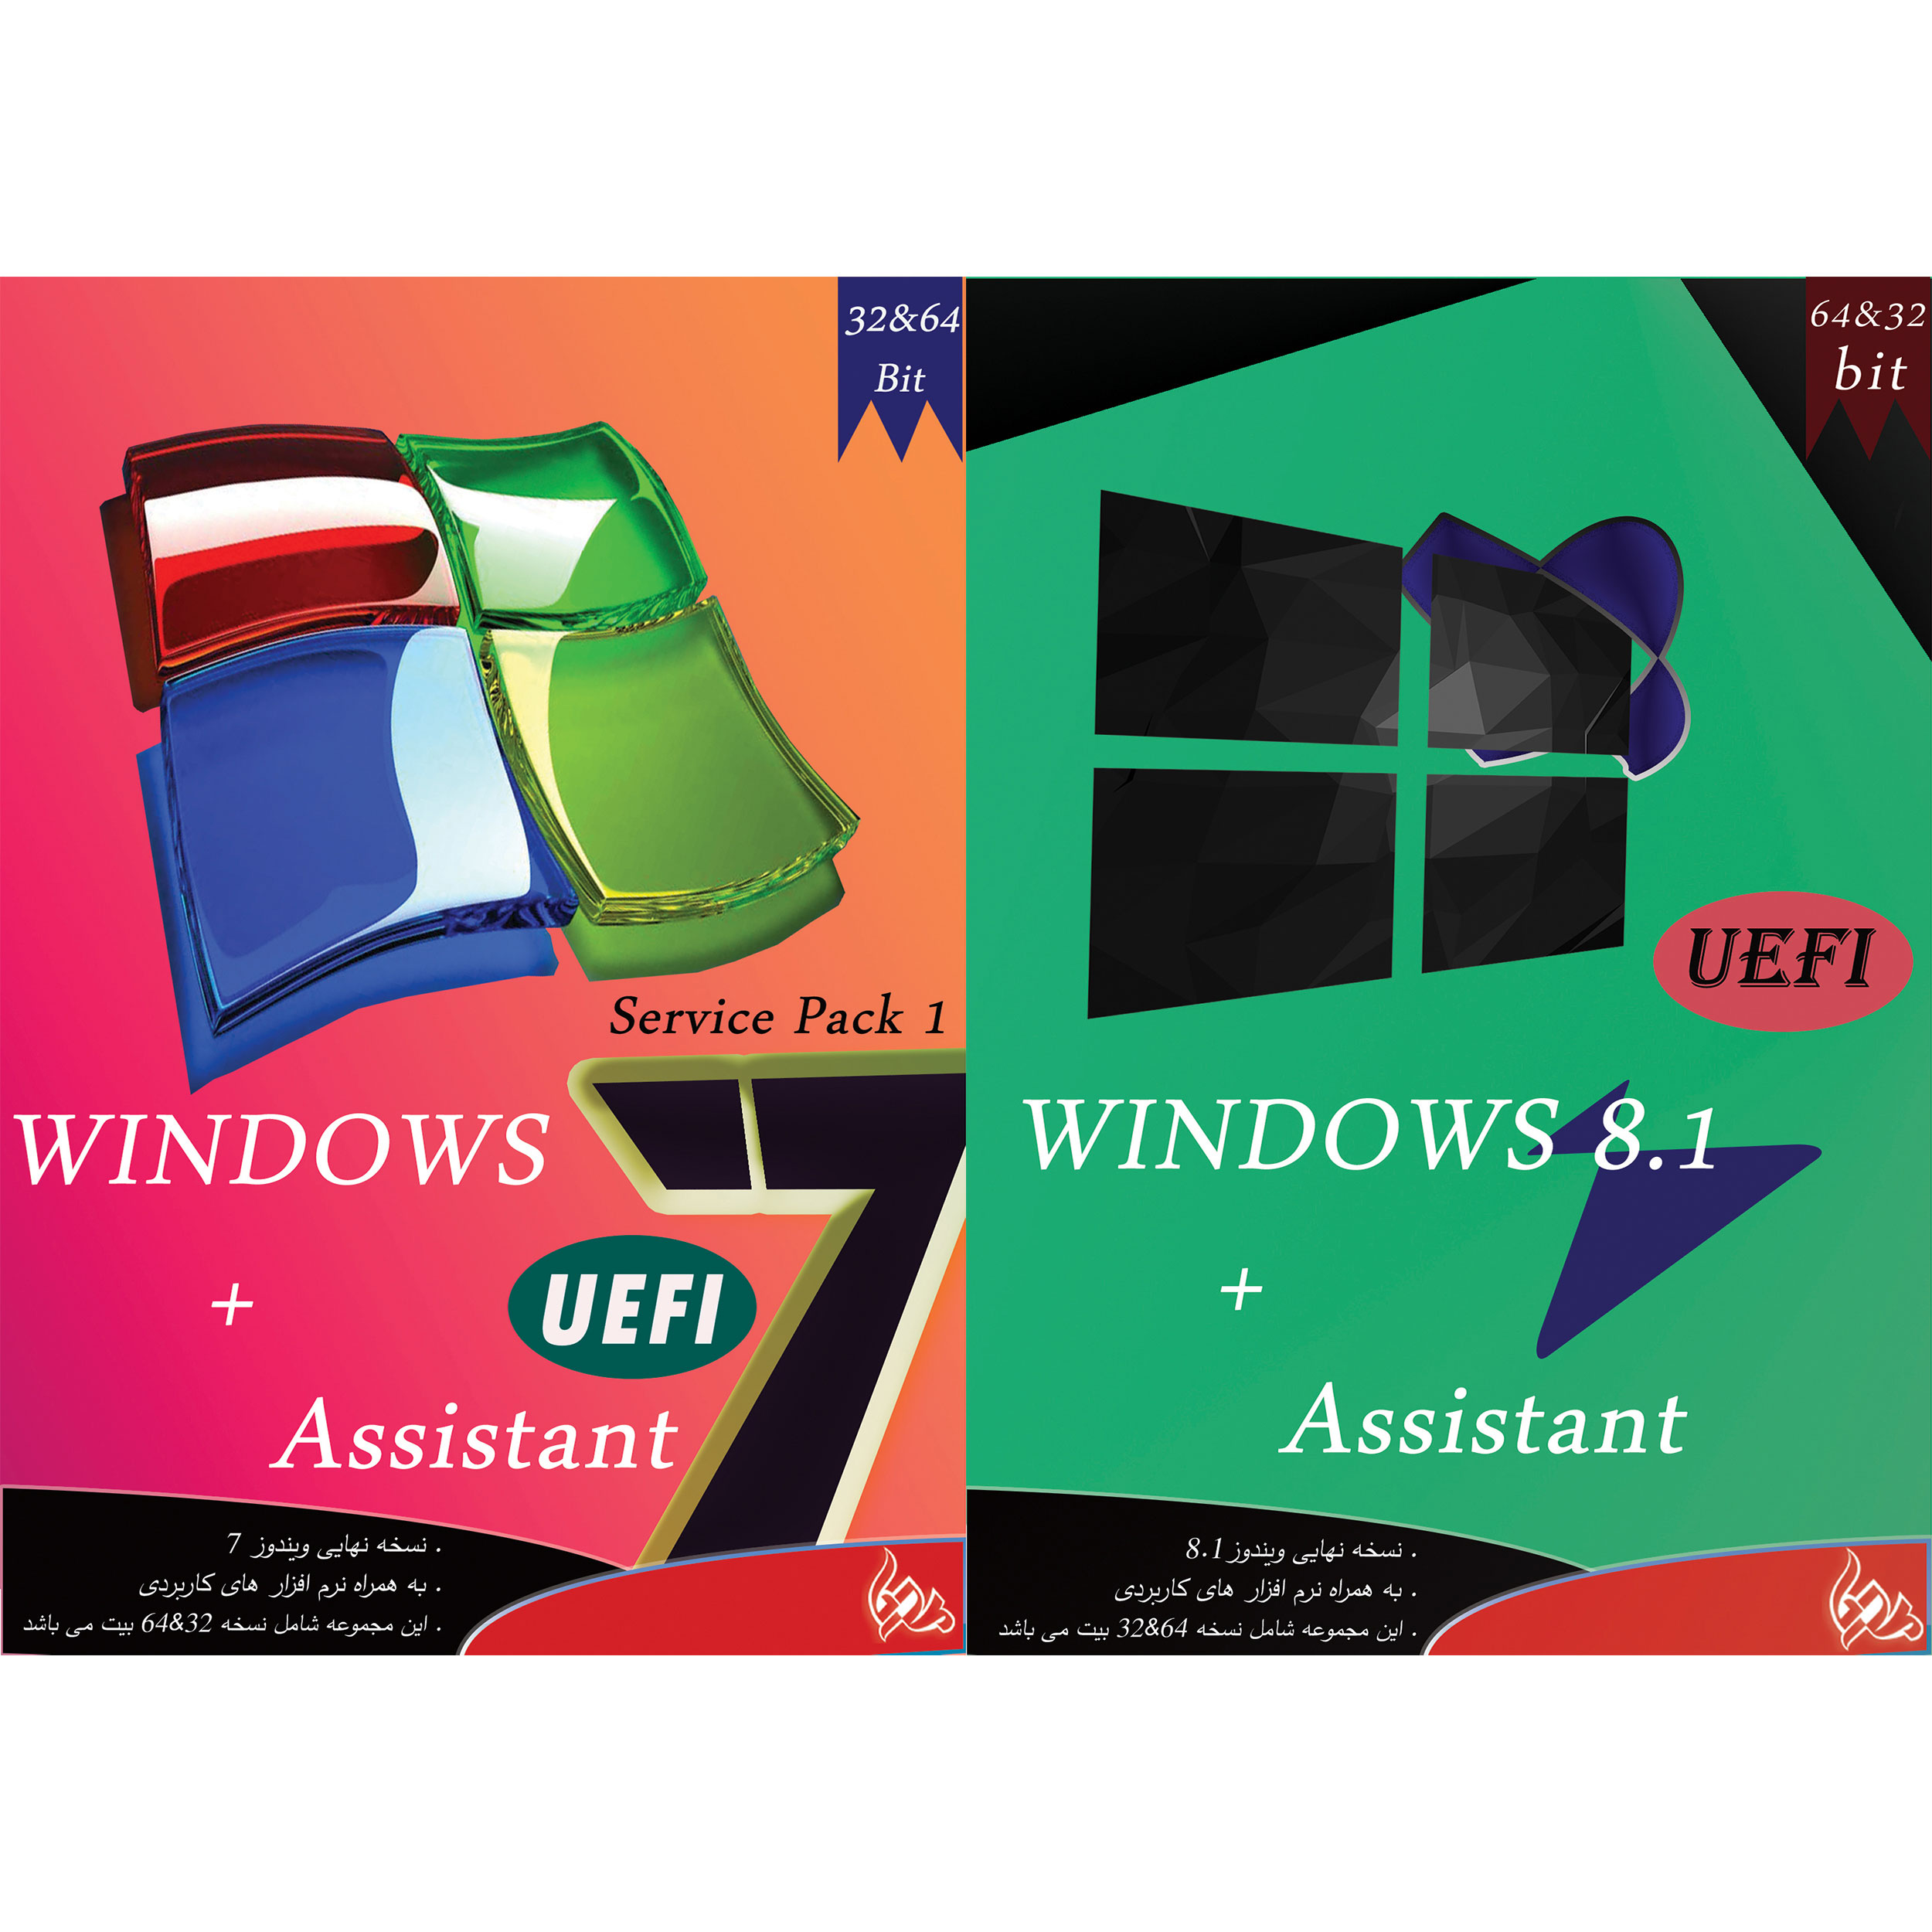 سیستم عامل Windows 7 UEFI + ASSISTANT نشر پدیا به همراه سیستم عامل Windows 8.1 UEFI + ASSISTANT نشر پدیا 